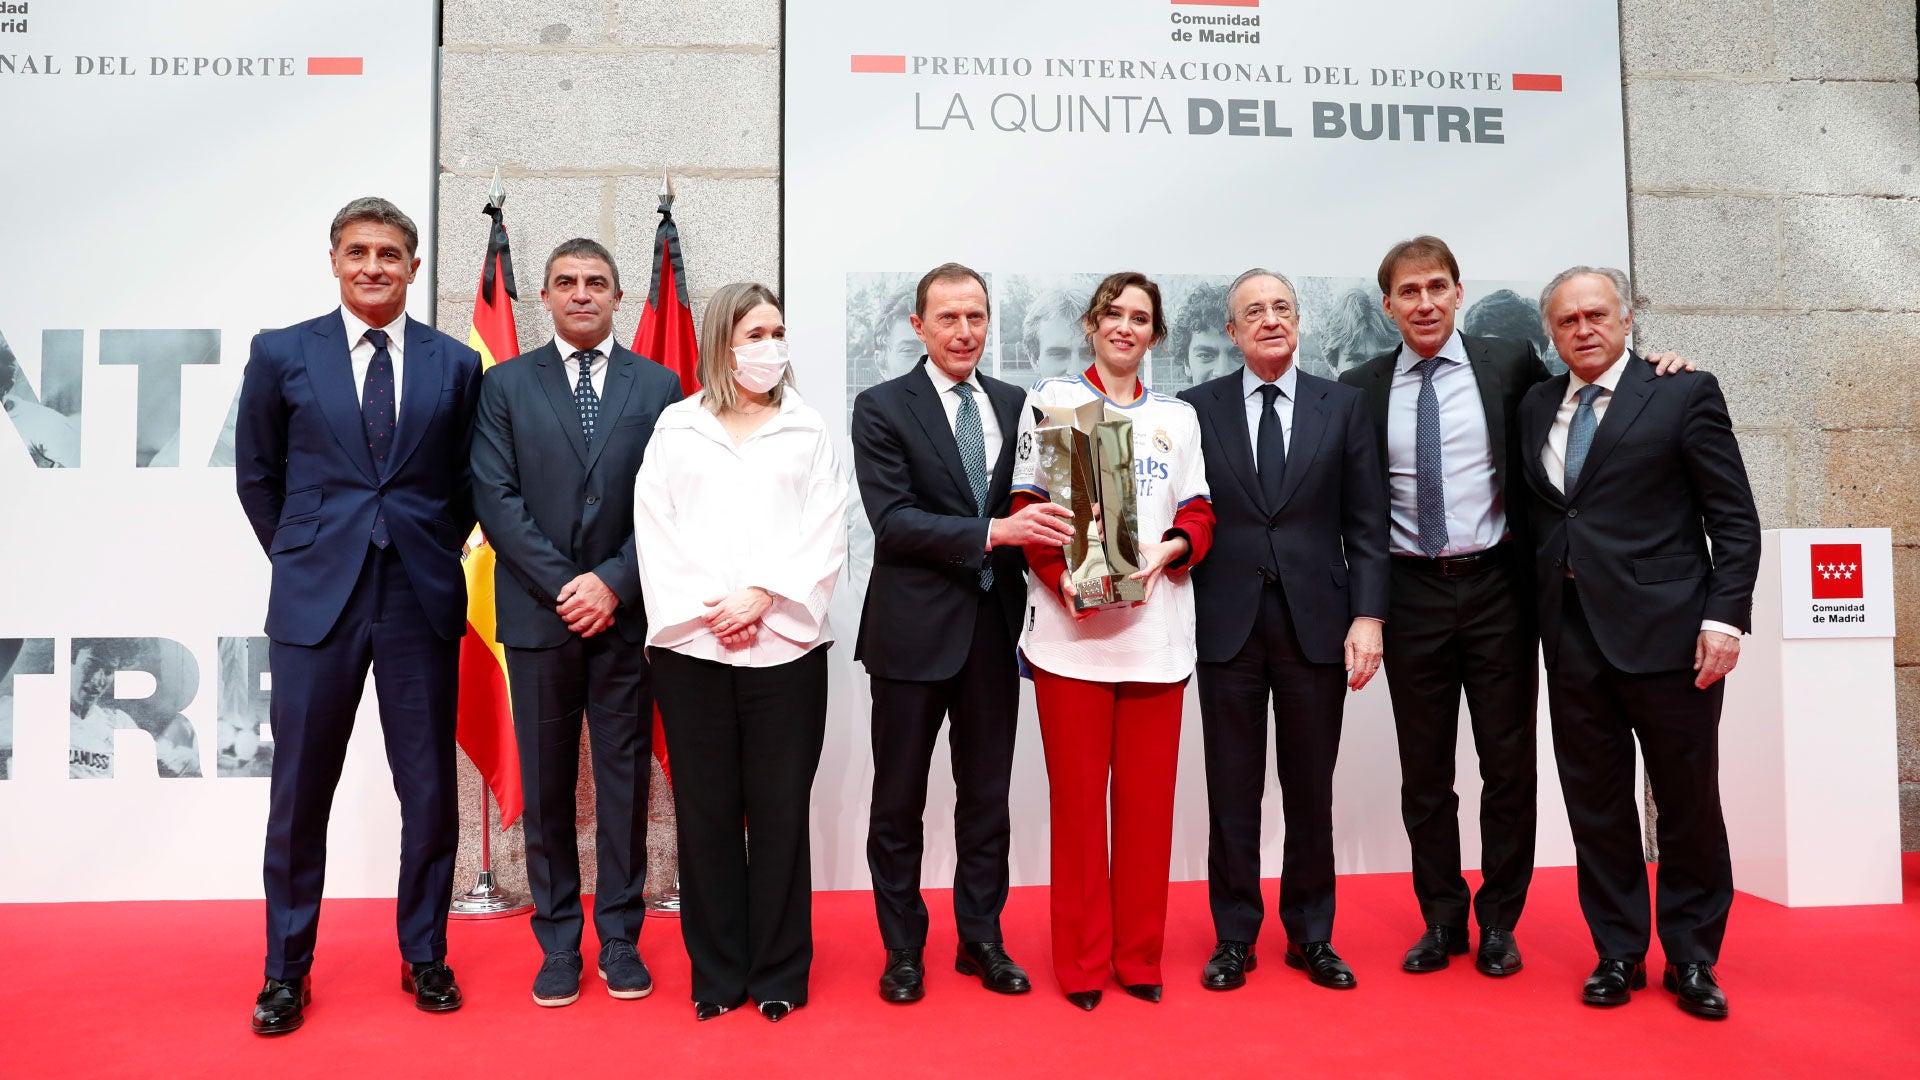 La Quinta del Buitre recibe el Premio Internacional del Deporte de la Comunidad de Madrid